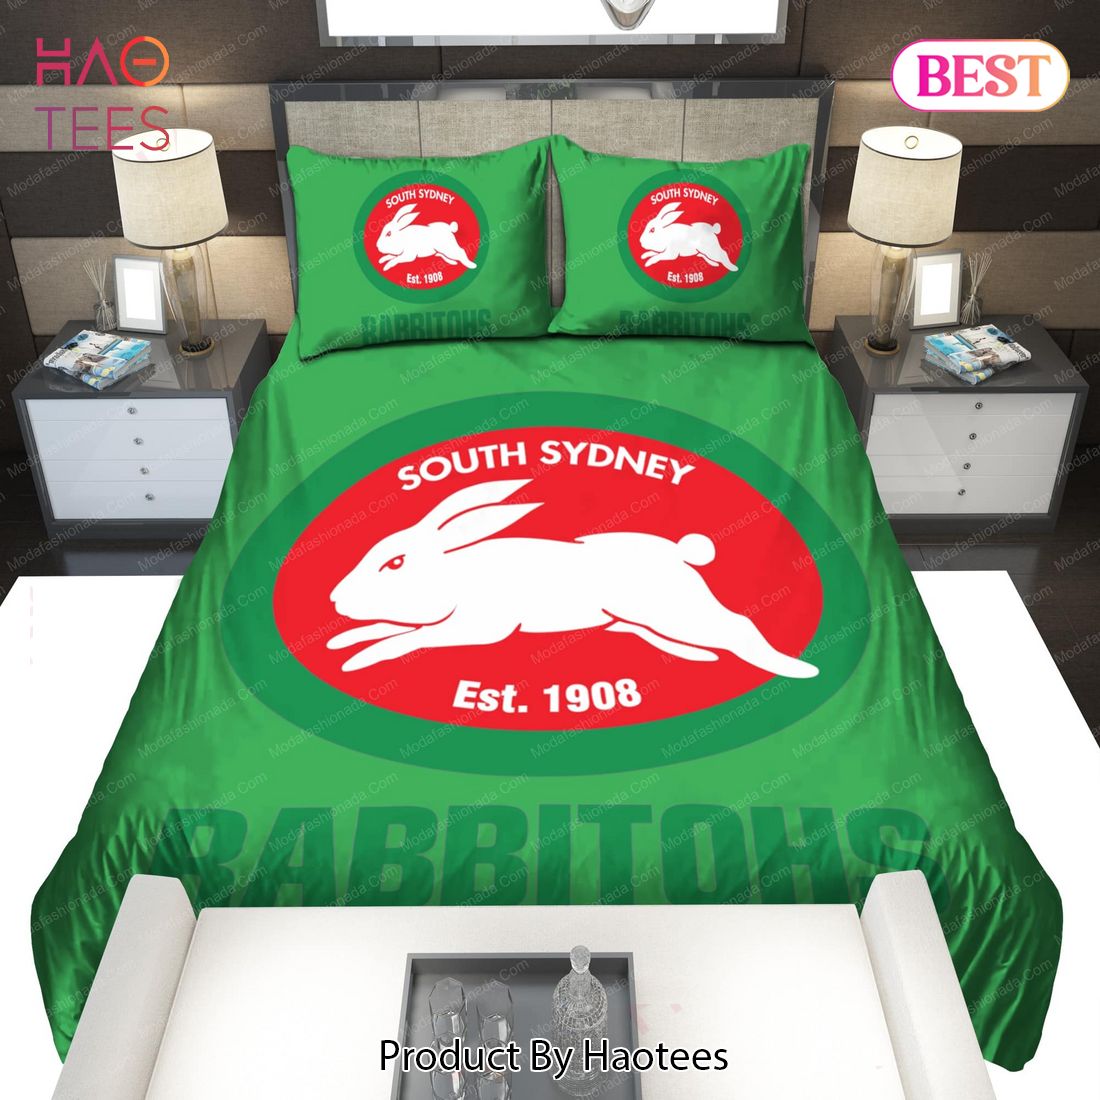 Buy South Sydney Rabbitohs Logo 2009 Bedding Sets Bed Sets, Bedroom Sets, Comforter Sets, Duvet Cover, Bedspread